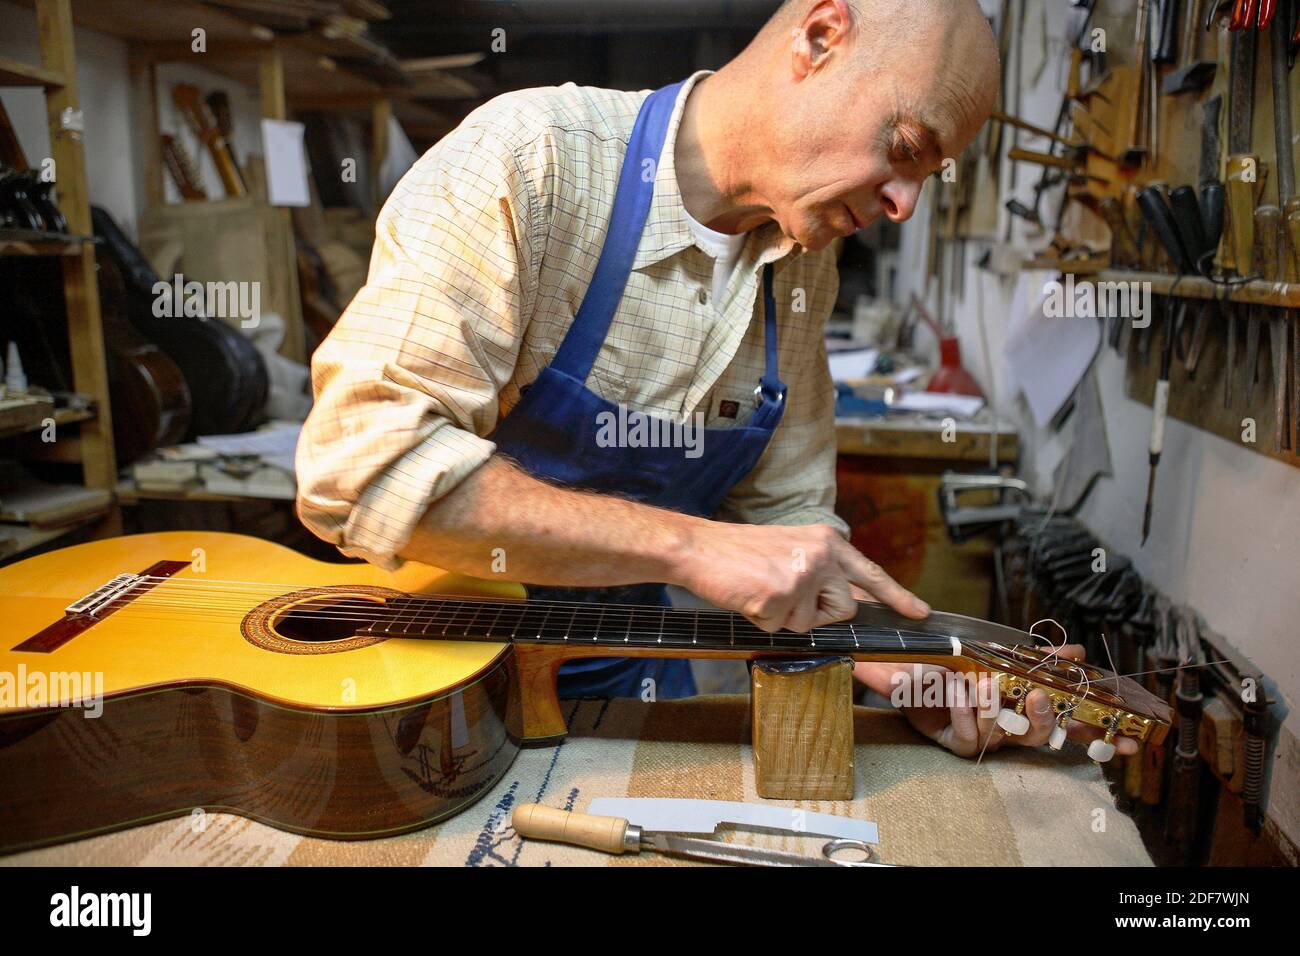 Guitarreria Alvarez, Luthier fabricando una guitarra en su taller, guitarras  tradicionales hechas a mano, Barrio de las Letras, MADRID, ESPAÑA, EUROPA  Fotografía de stock - Alamy